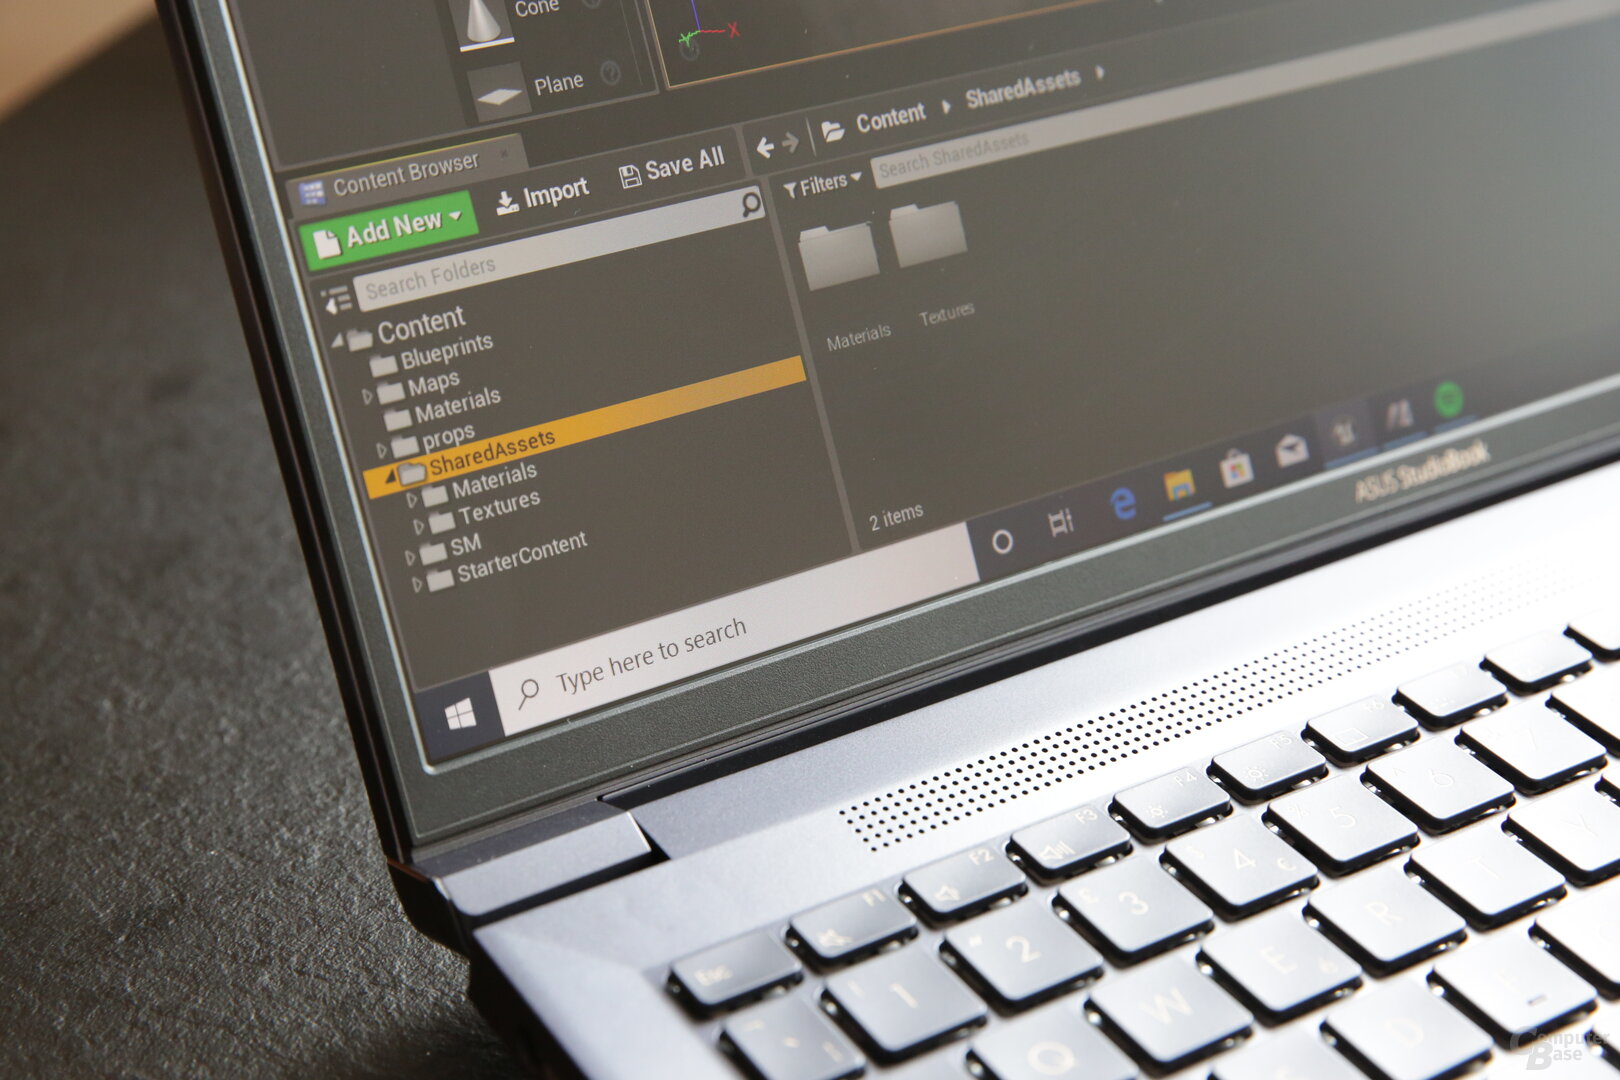 Asus ProArt StudioBook Pro X